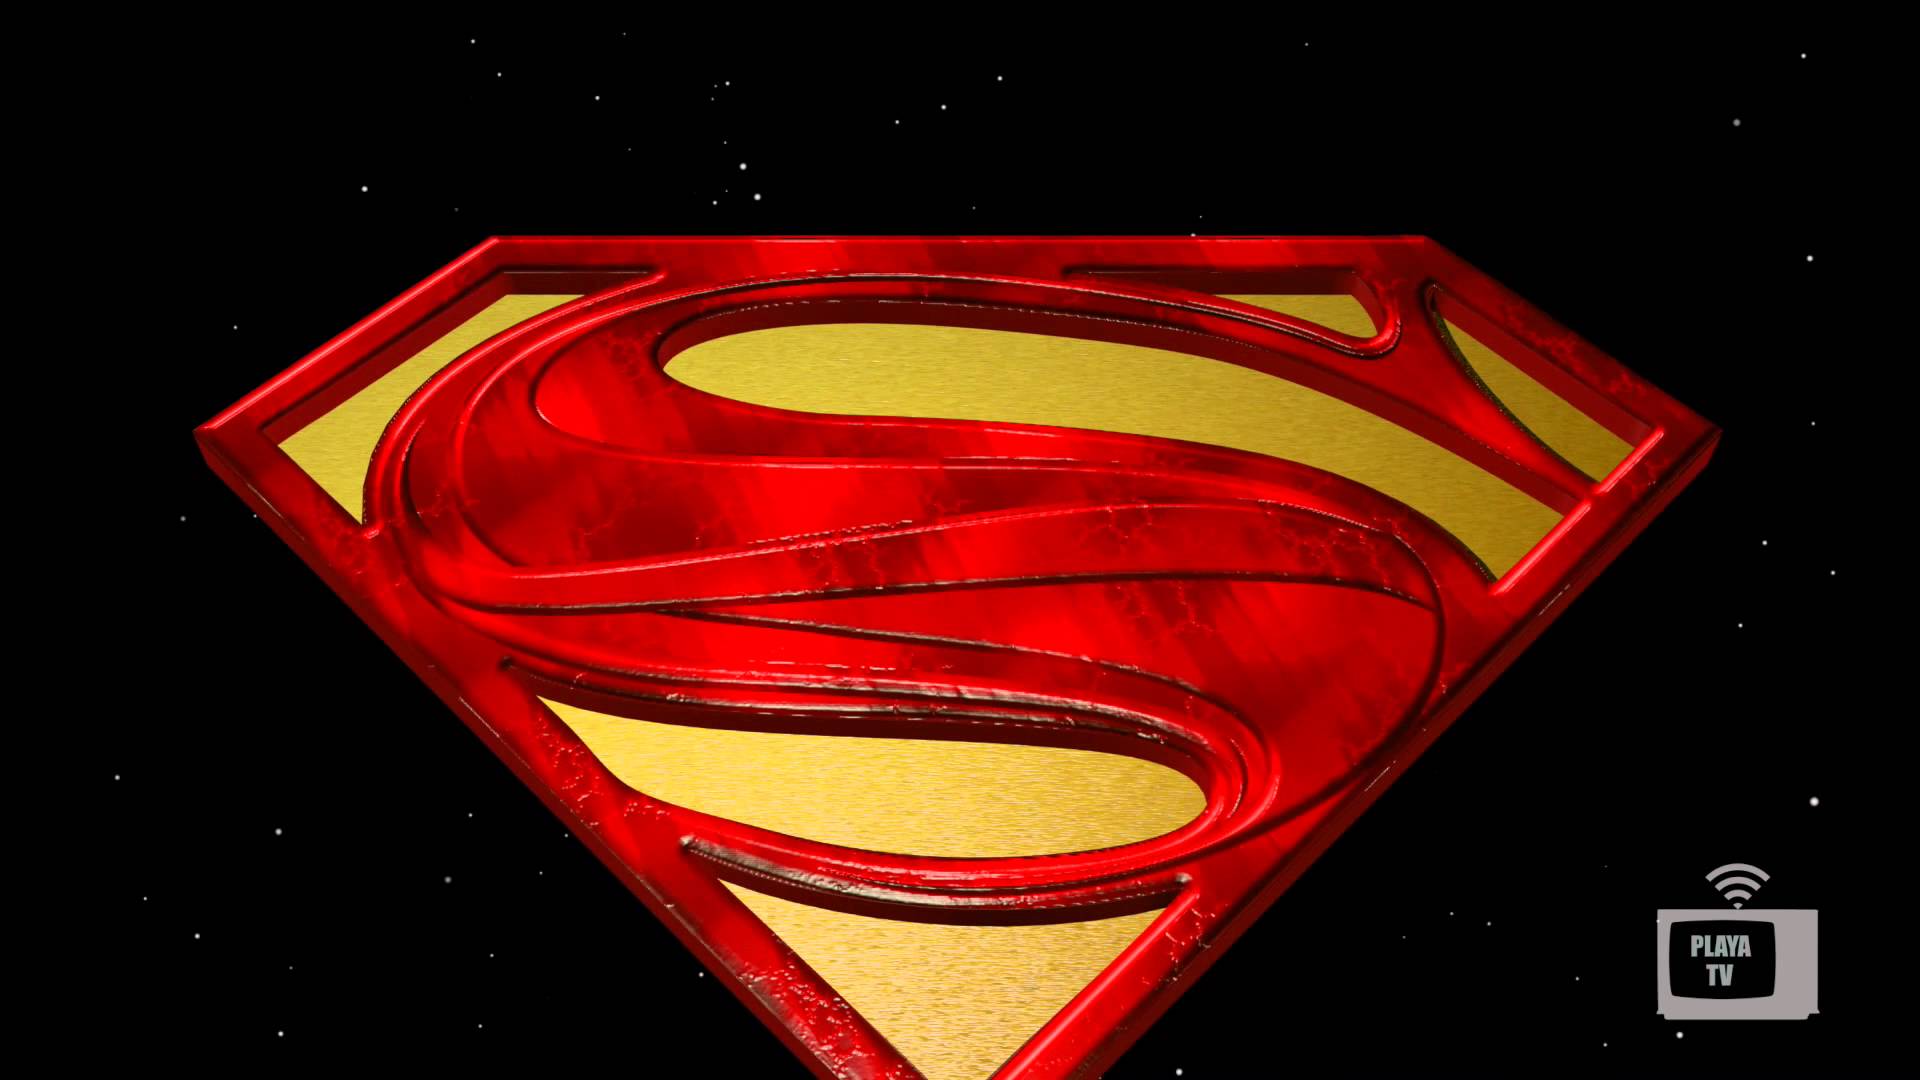 Супермен логотип